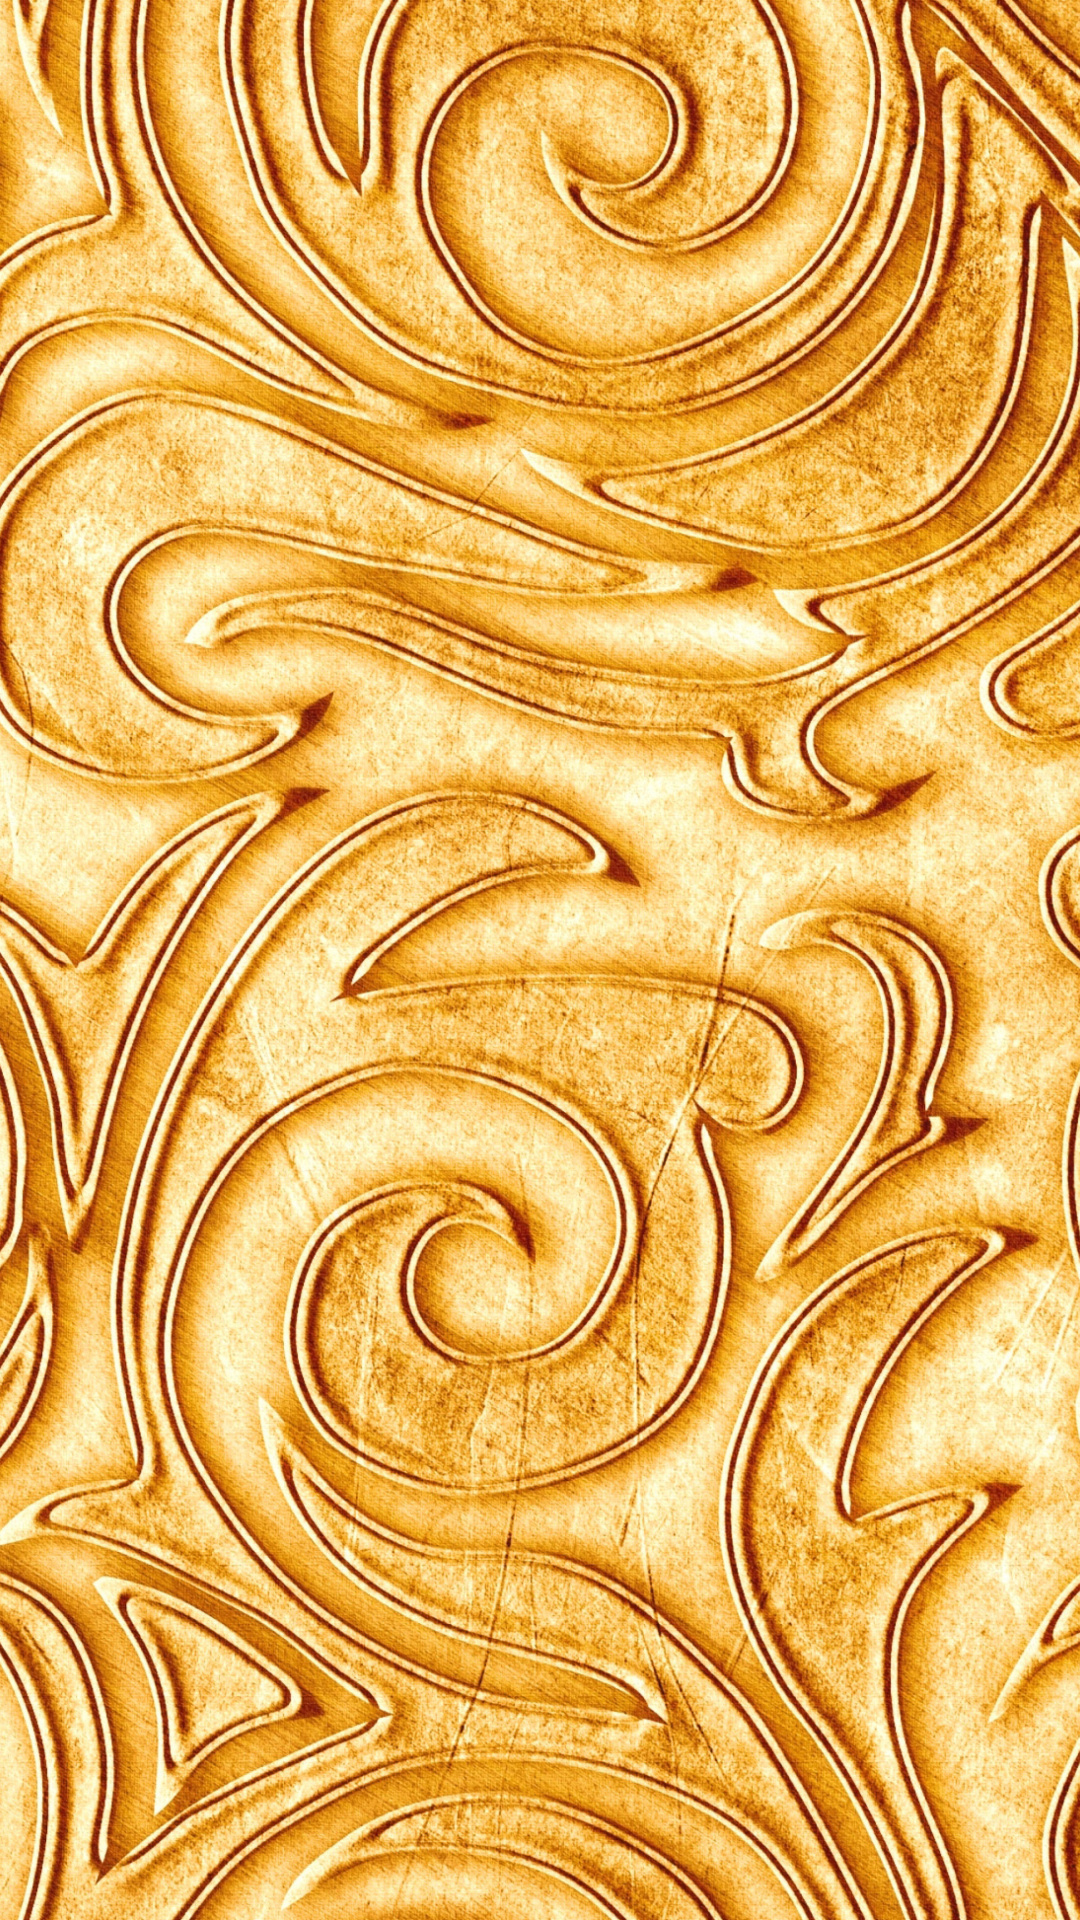 Das Gold sprigs pattern Wallpaper 1080x1920